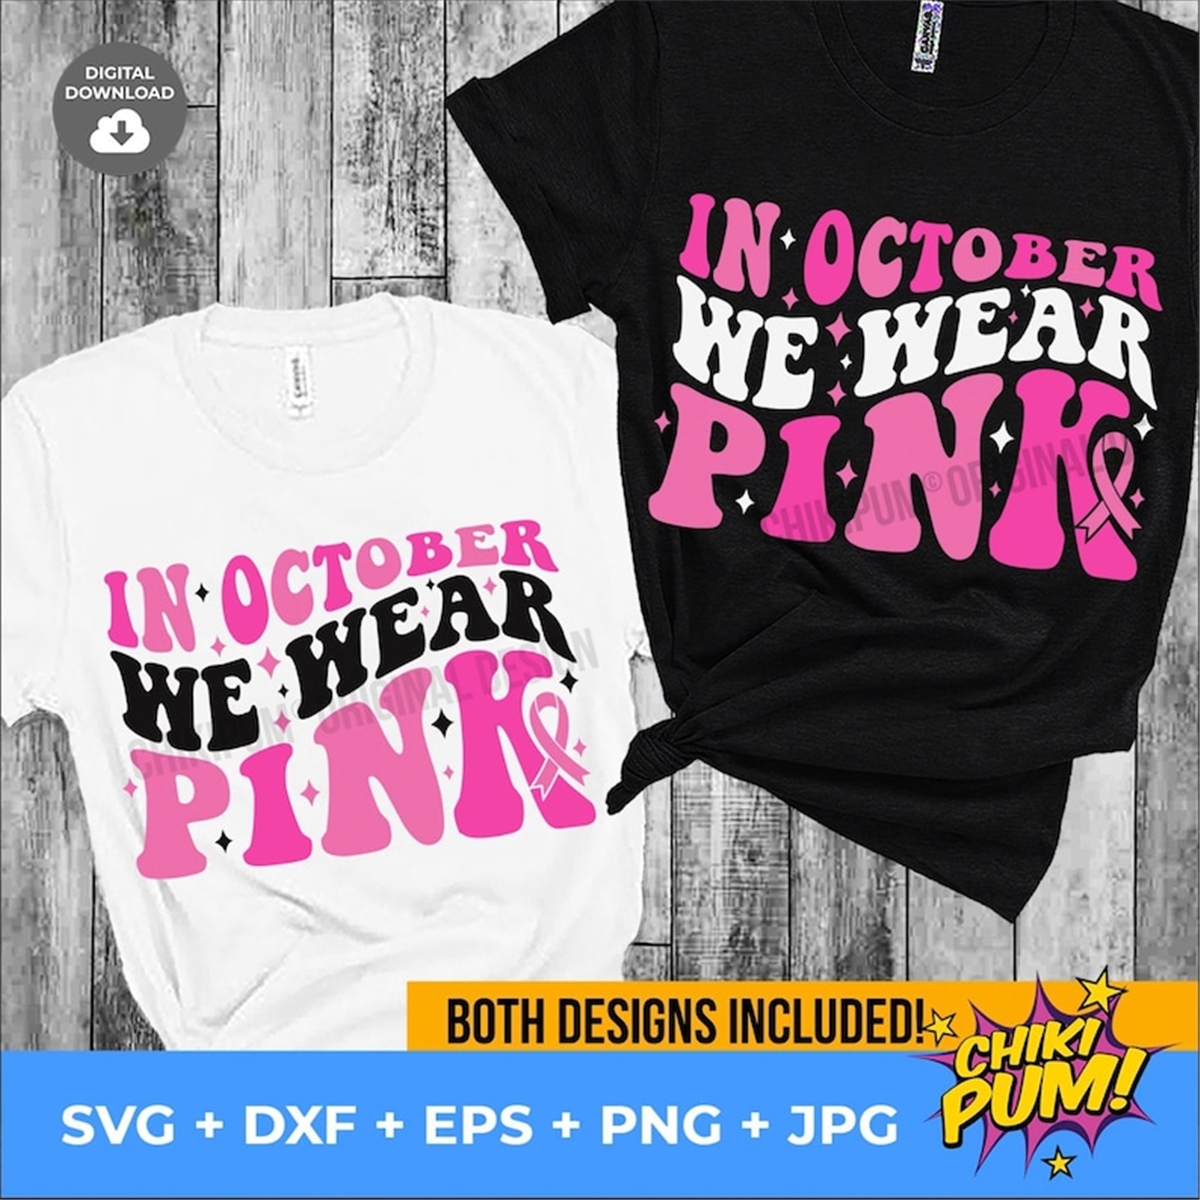 in-october-we-wear-pink-svg-breast-cancer-svg-pink-svg-image-1